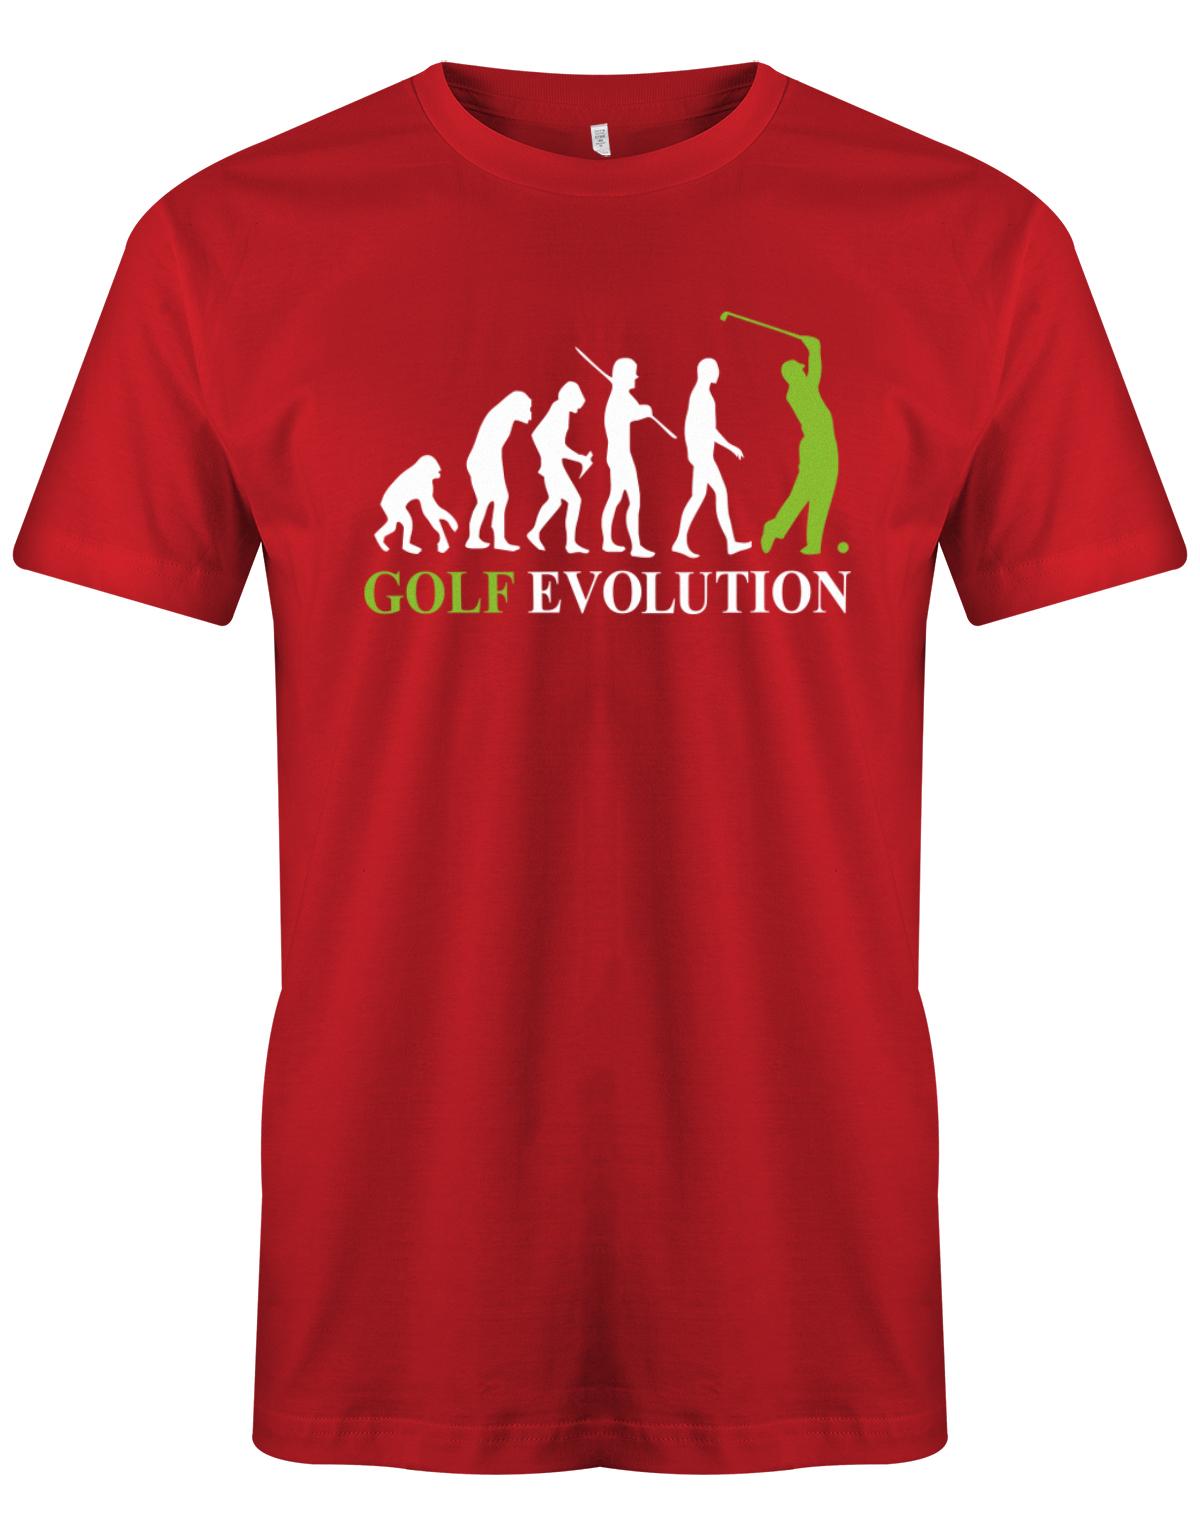 Golf-evolution-Herren-Shirt-Rot